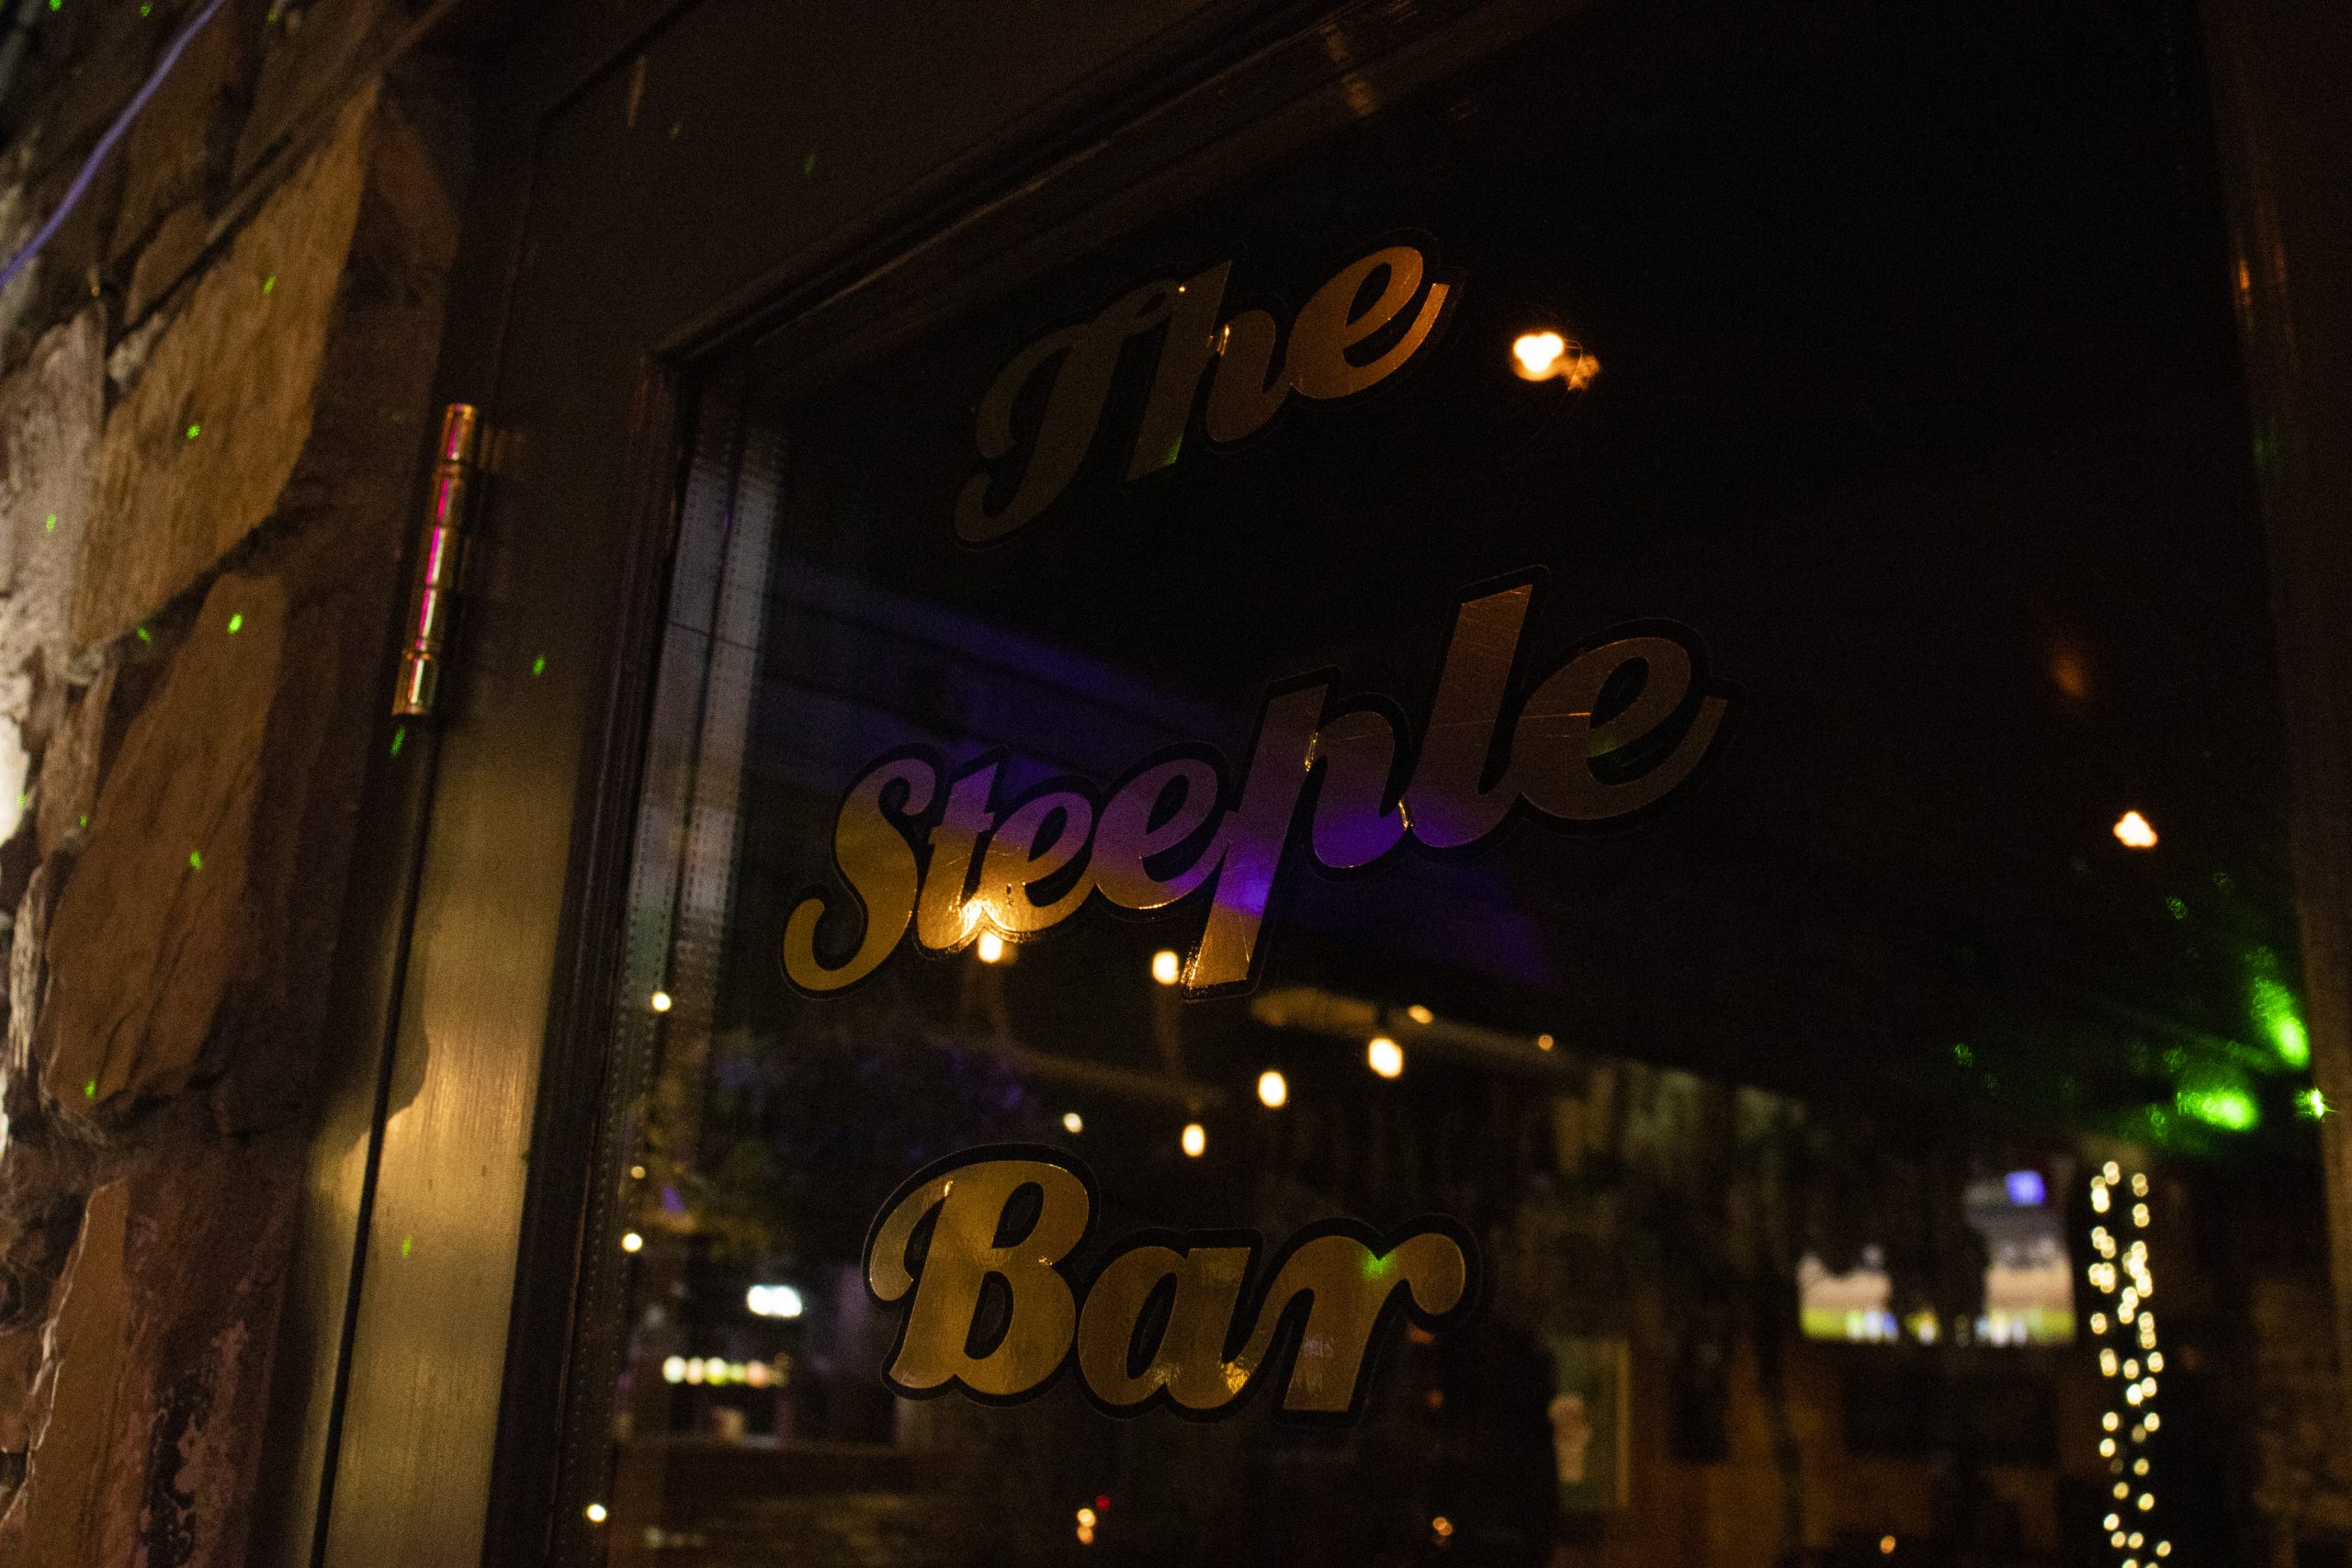 Steeple bar